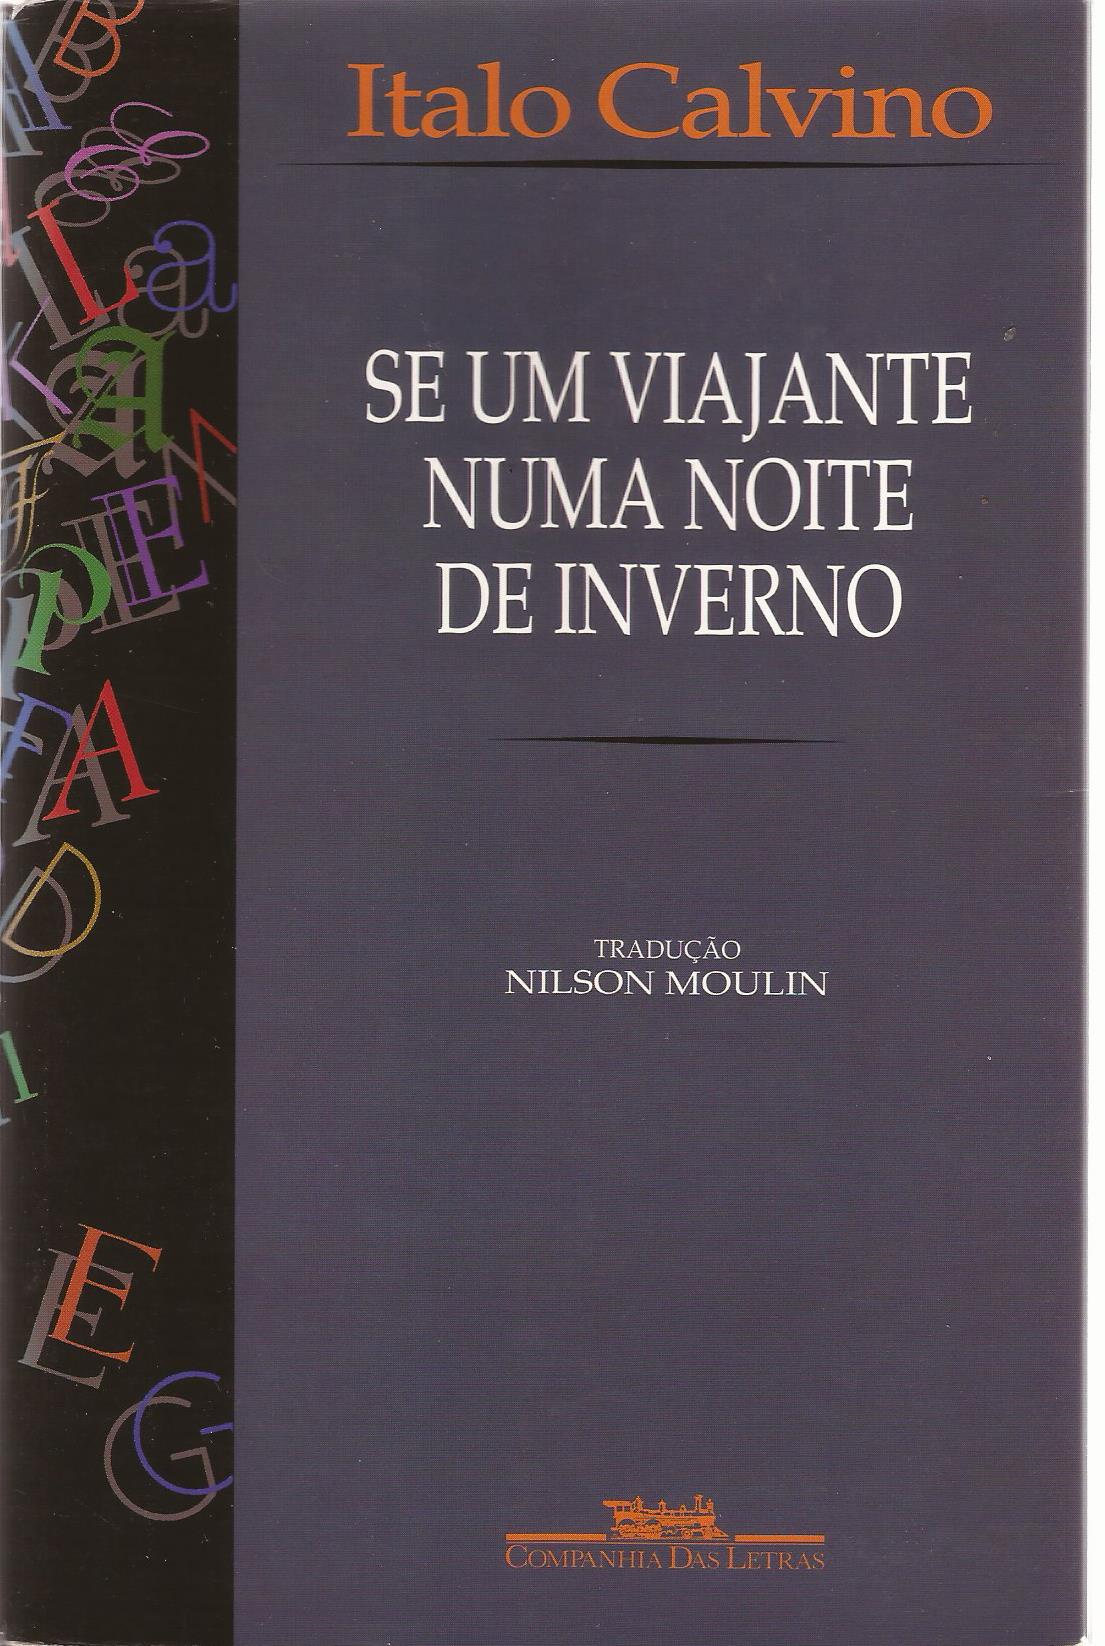 https://www.literaturabrasileira.ufsc.br/_images/obras/se_um_viajante_numa_noite_de_inverno_2000_ok.jpg